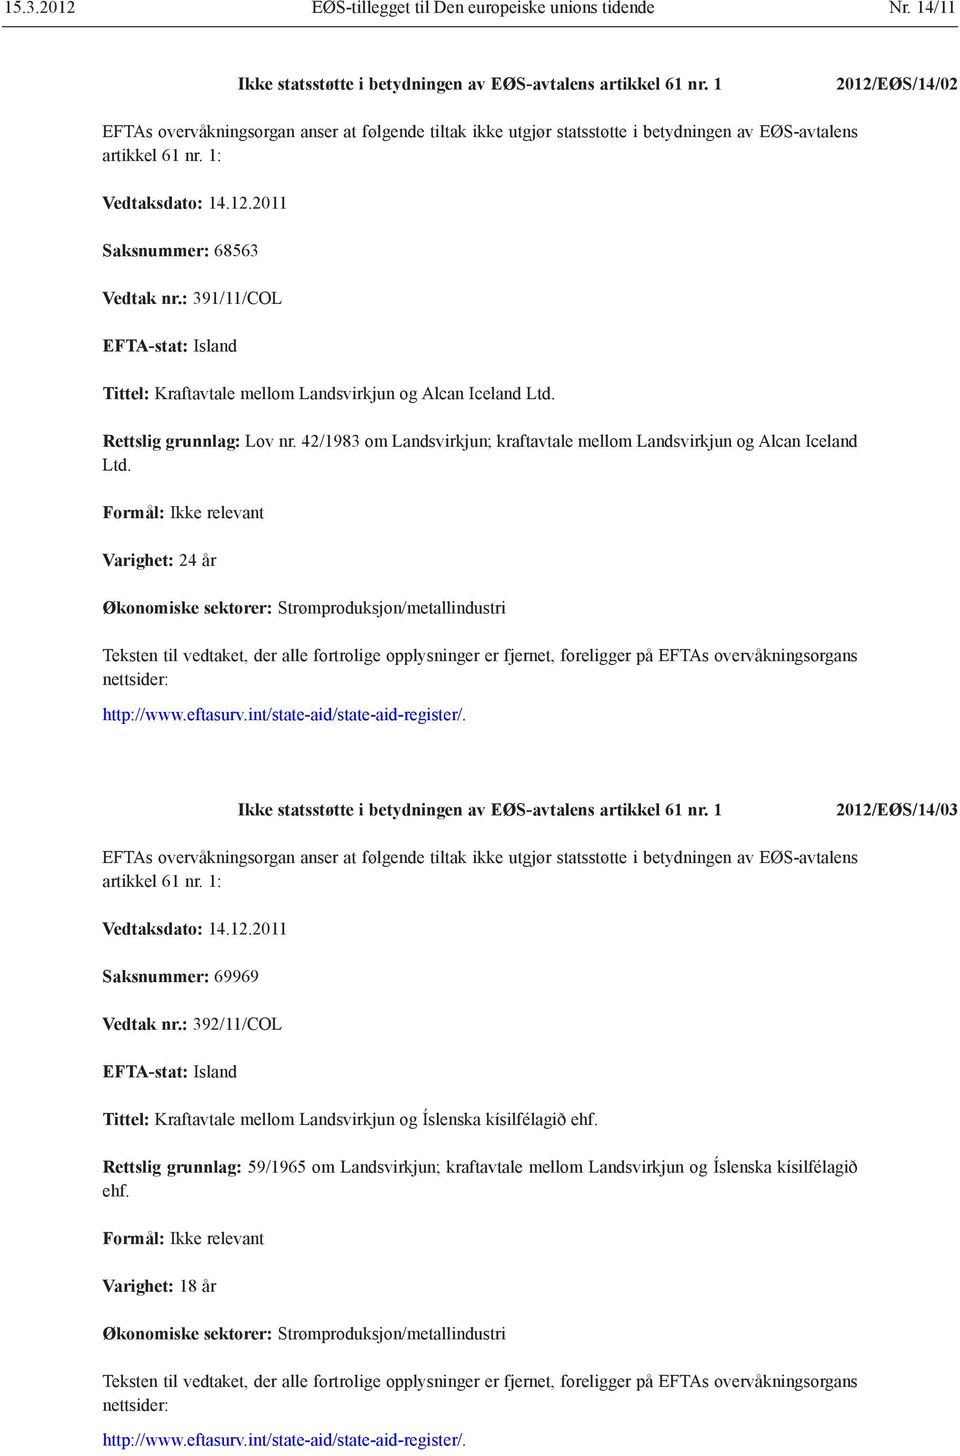 : 391/11/COL EFTA-stat: Island Tittel: Kraftavtale mellom Landsvirkjun og Alcan Iceland Ltd. Rettslig grunnlag: Lov nr. 42/1983 om Landsvirkjun; kraftavtale mellom Landsvirkjun og Alcan Iceland Ltd.